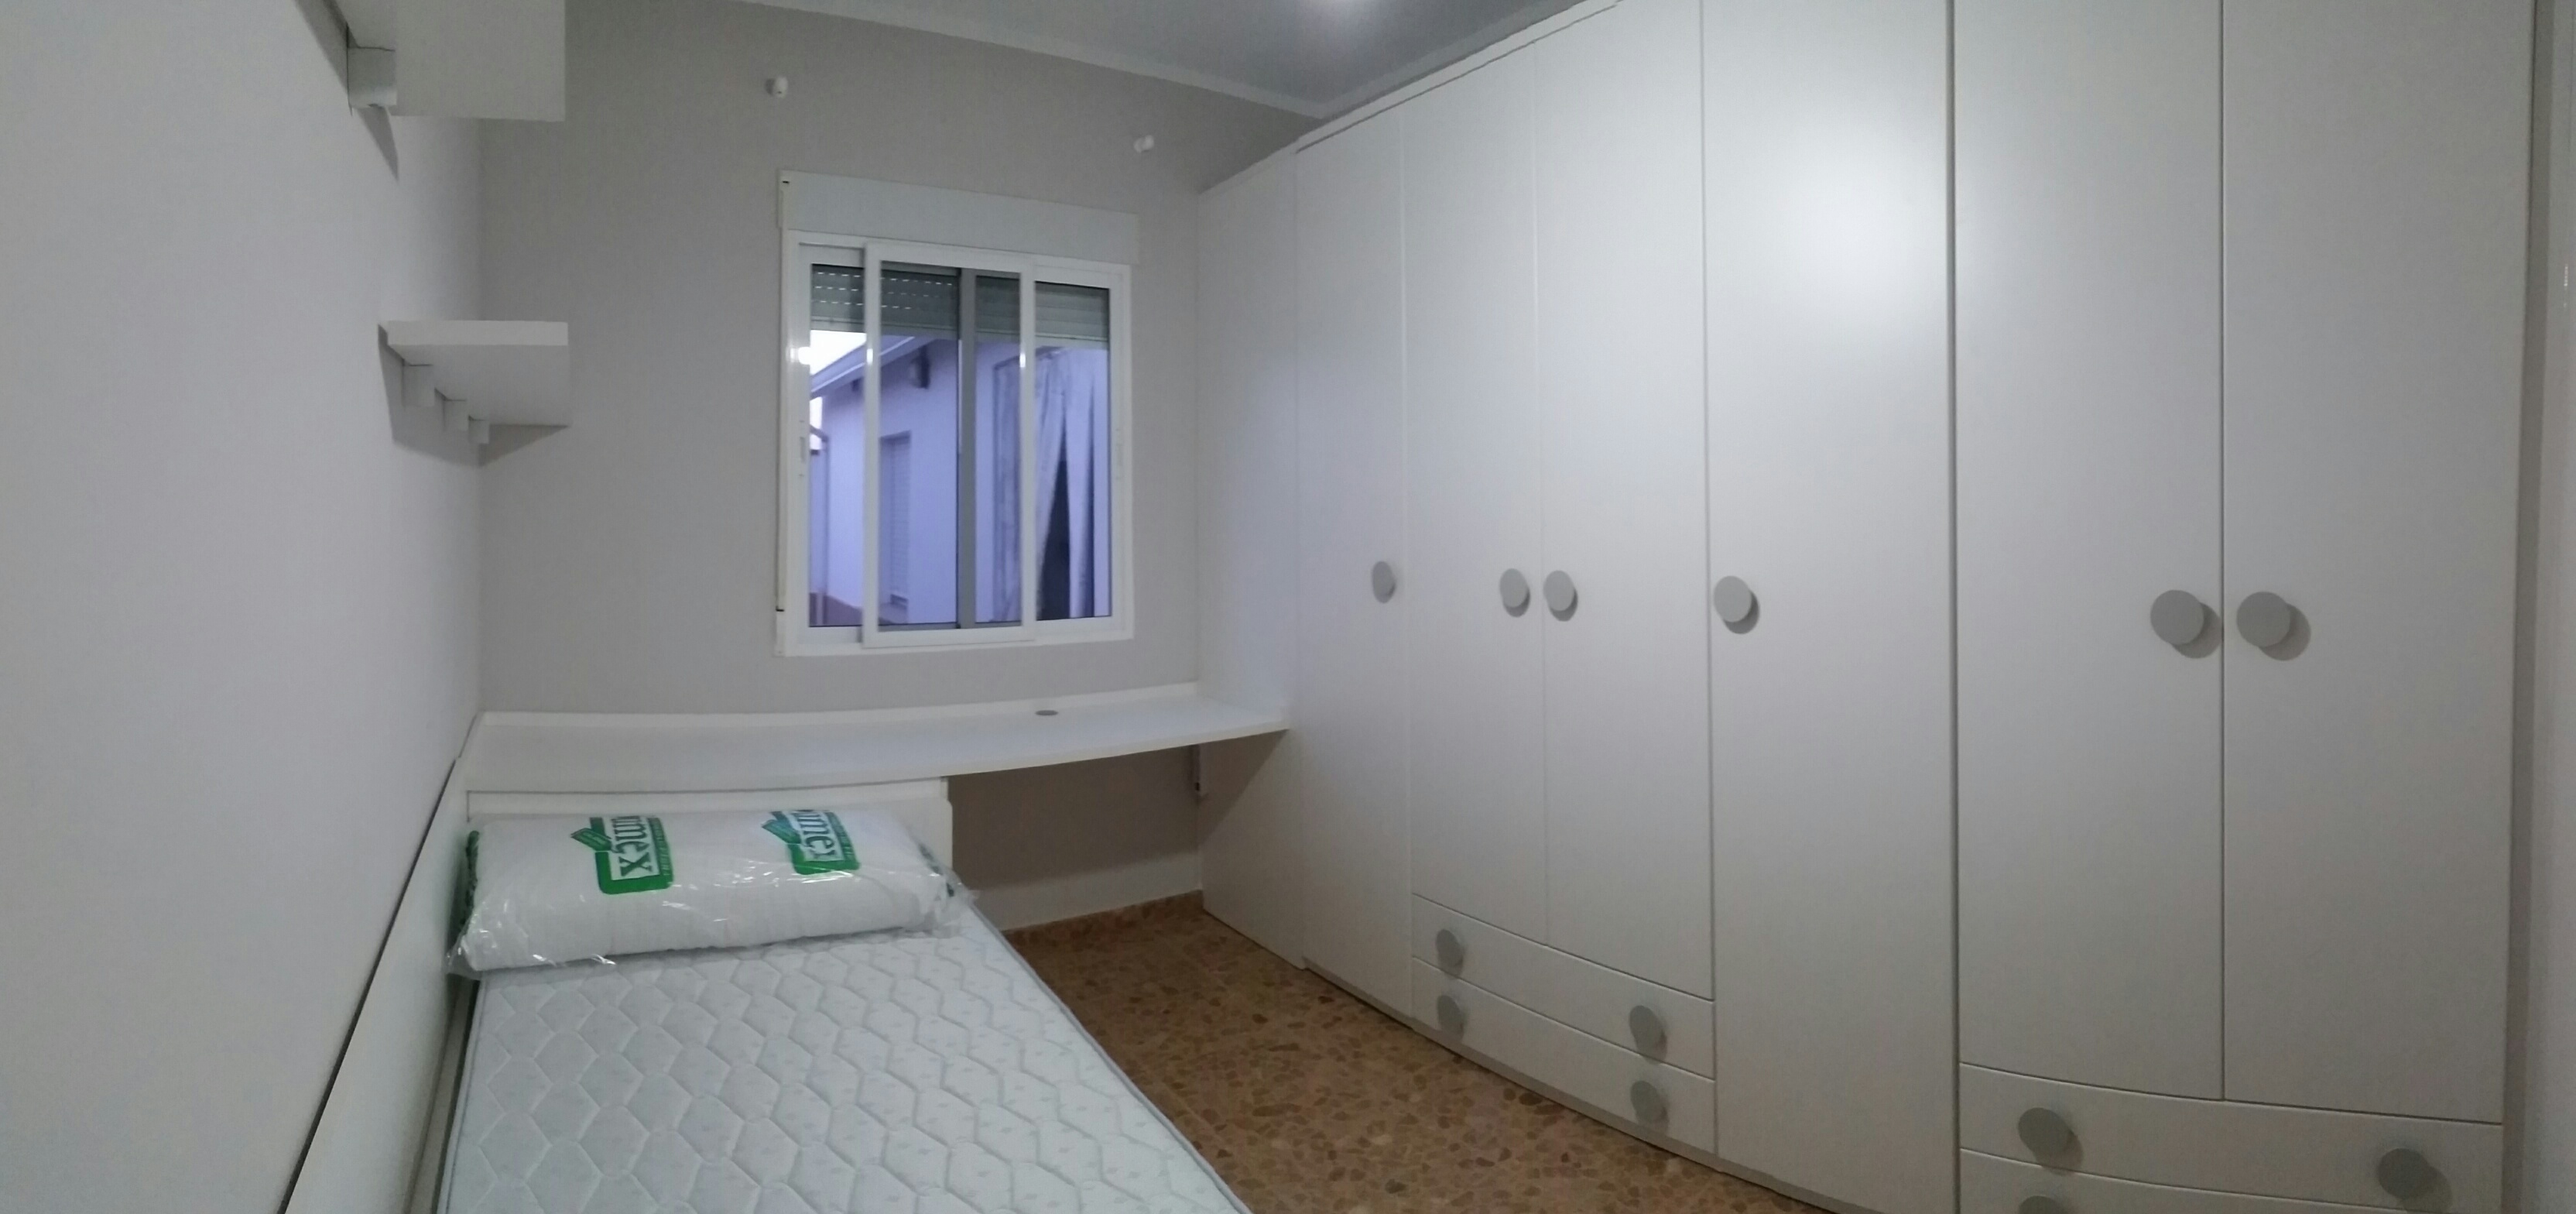 Dormitorio en blanco con gran armario